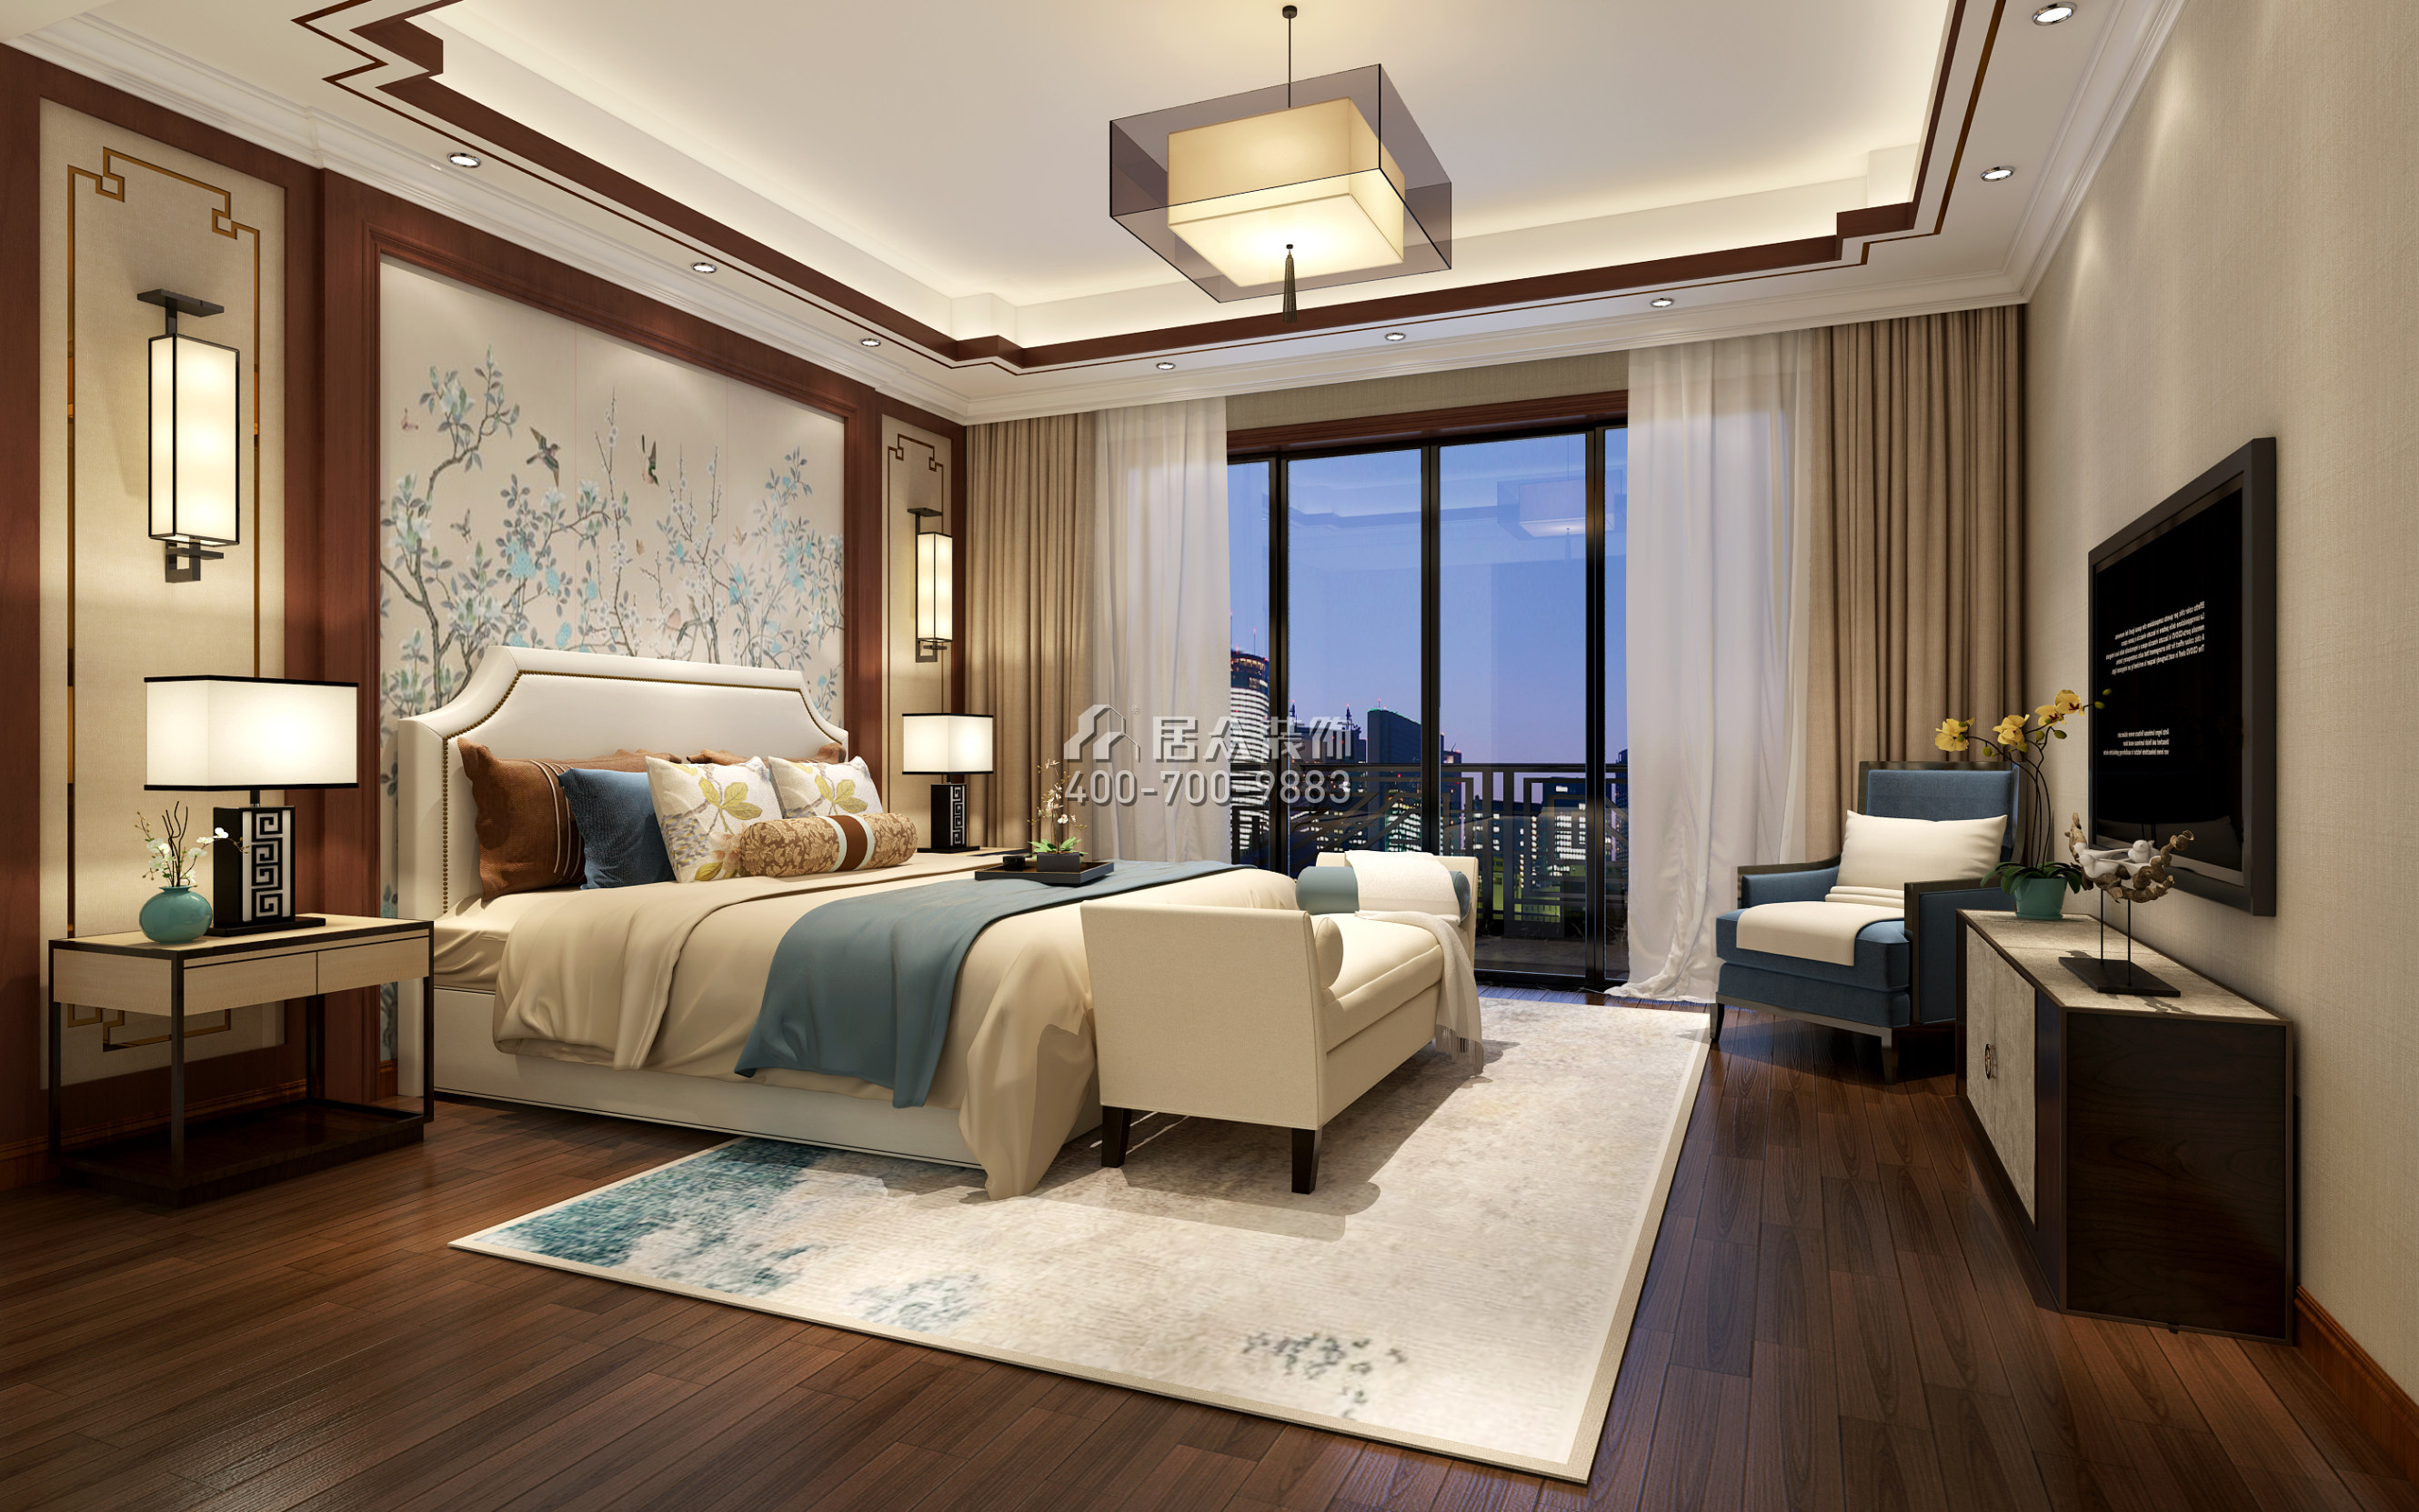 华发山庄260平方米中式风格平层户型卧室装修效果图